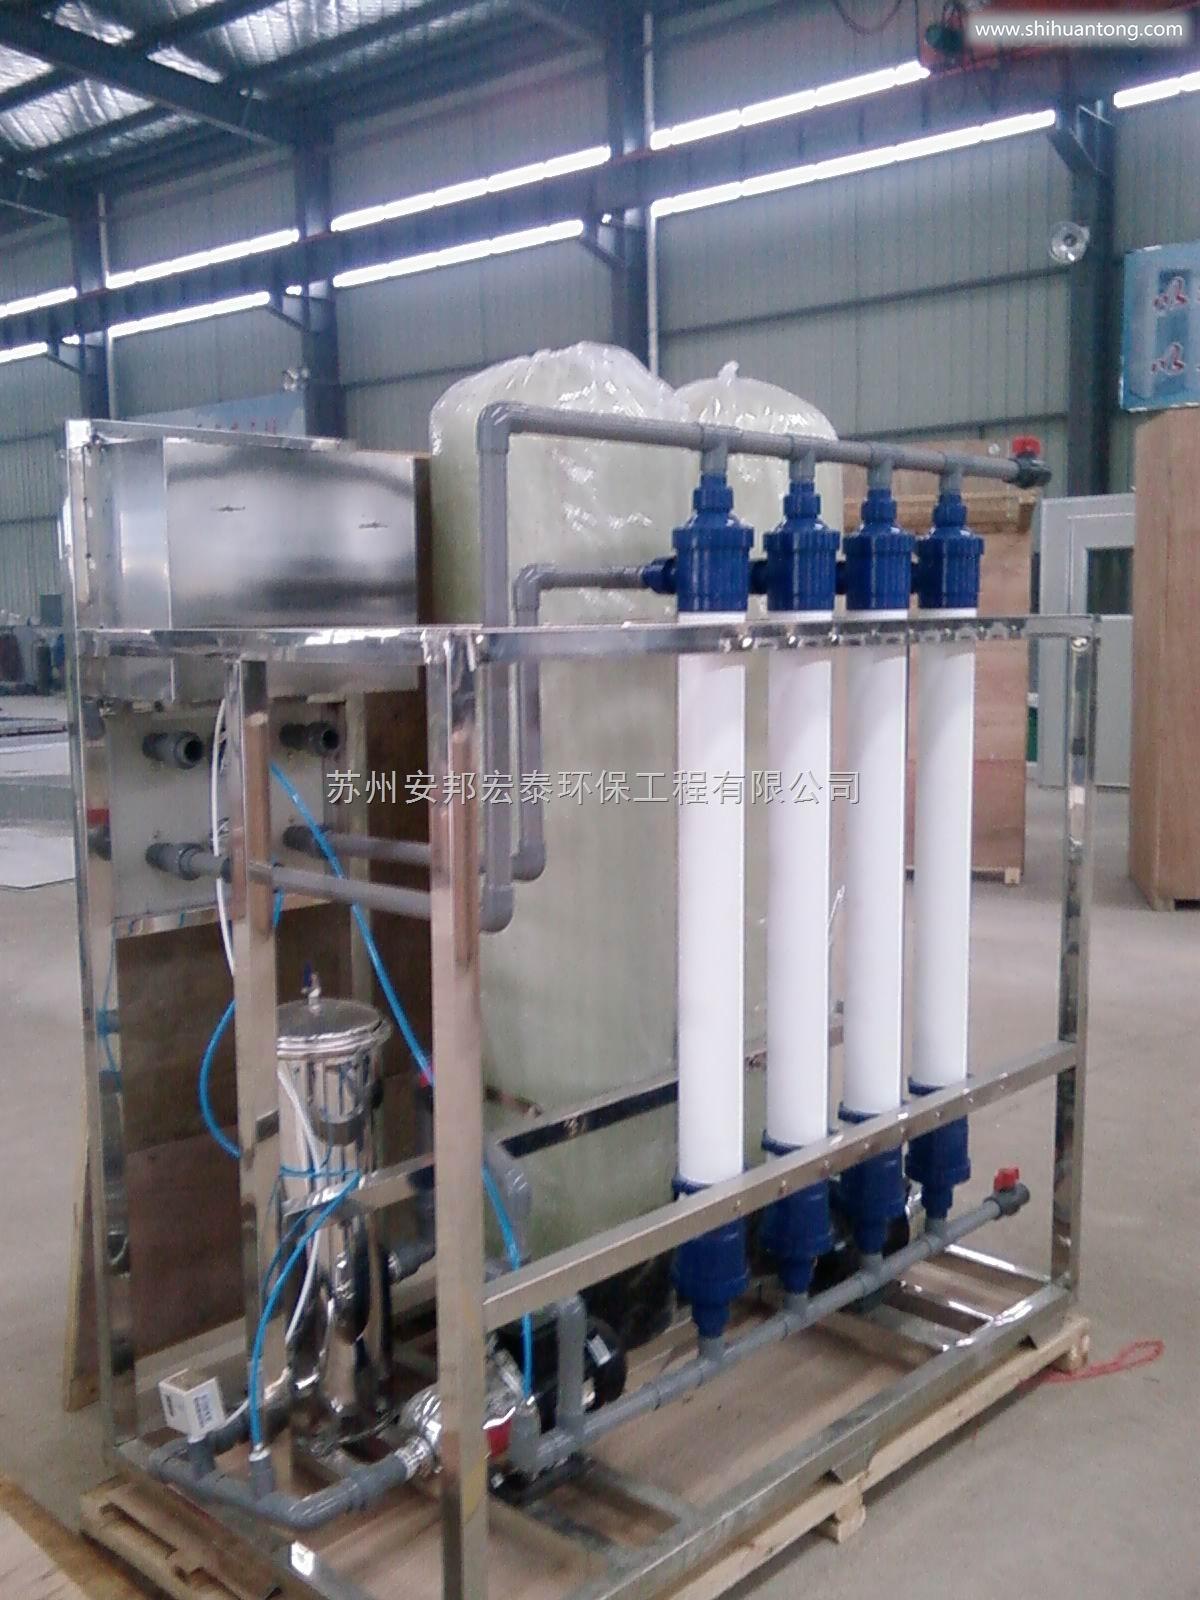 安邦宏泰上海大连专业生产桶瓶线设备